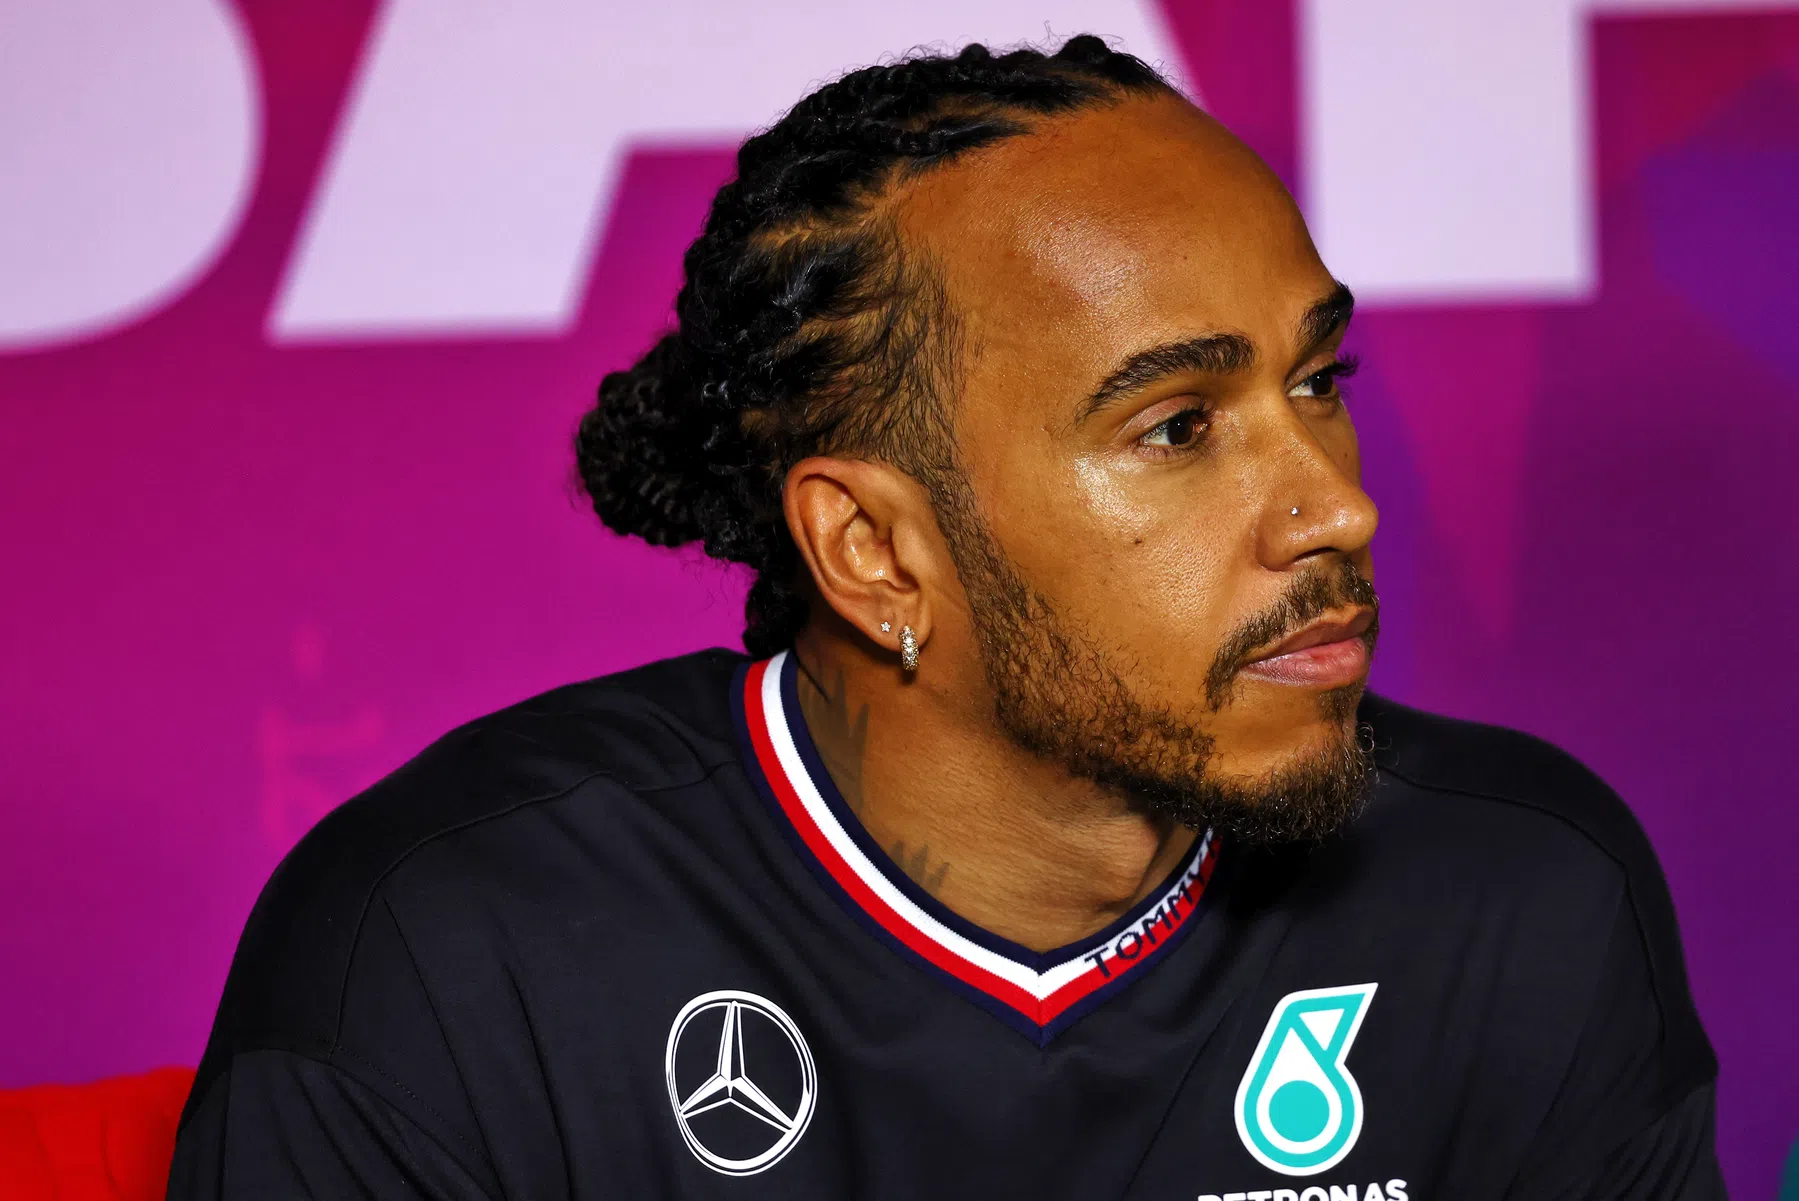 'Lewis Hamilton is een hele goede rijder, maar geen supertalent meer'